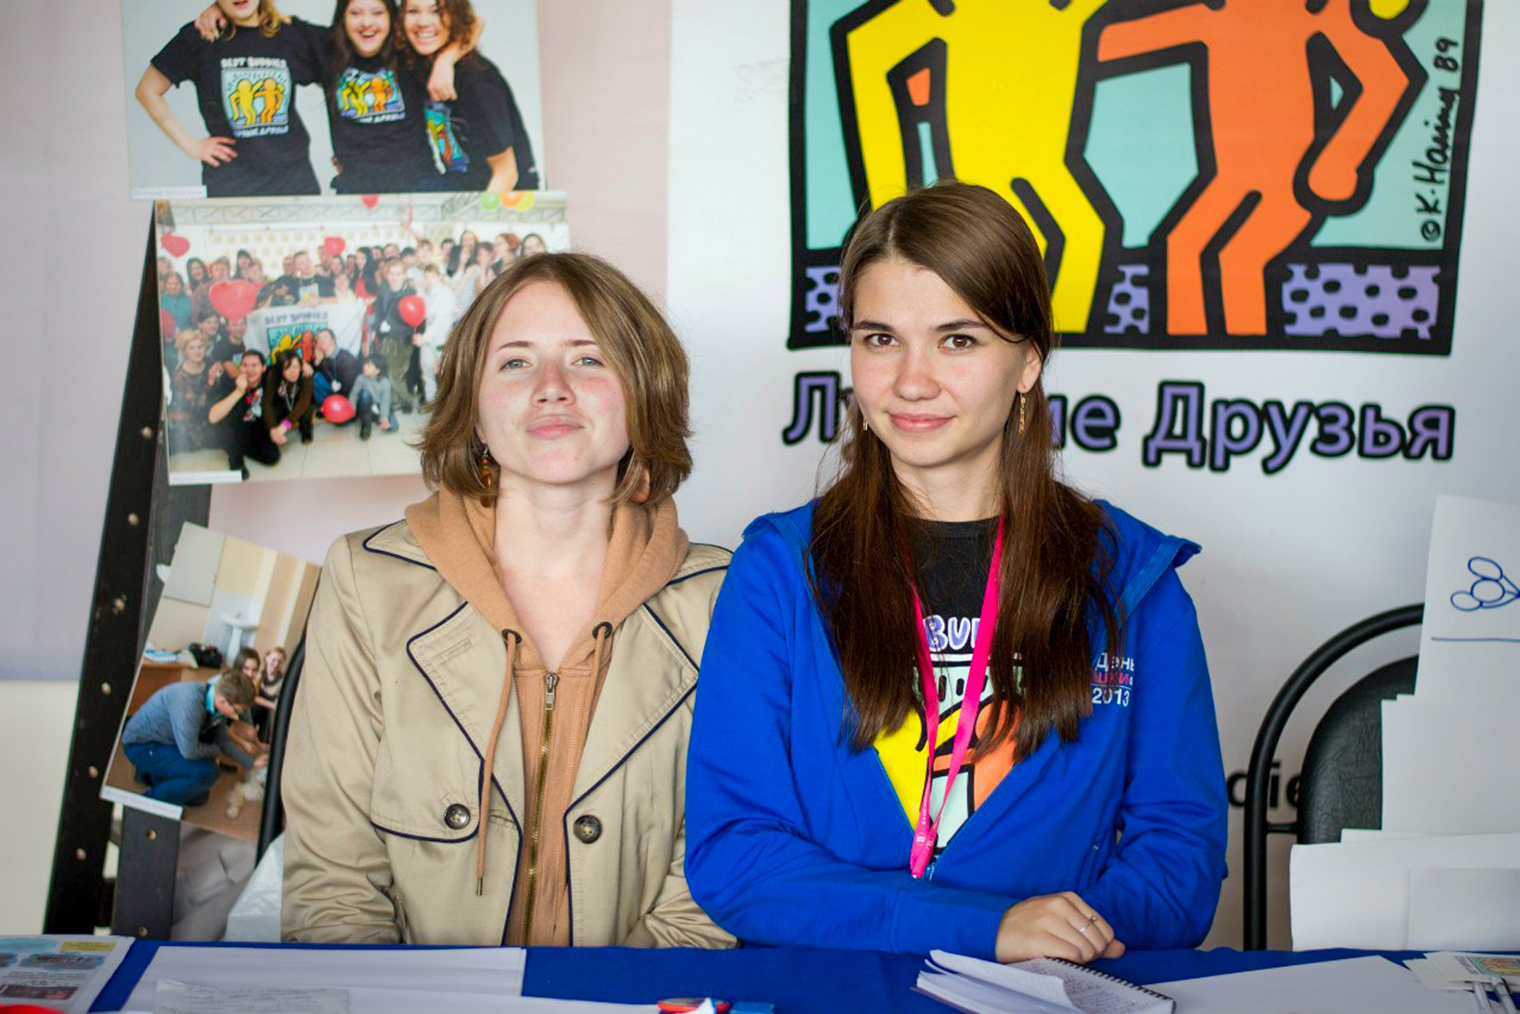 Я и моя подруга-волонтер Маша, слева, рассказываем о волонтерстве для студентов на мероприятии Вышки. Источник: сообщество «Best Buddies HSE» во «Вконтакте»